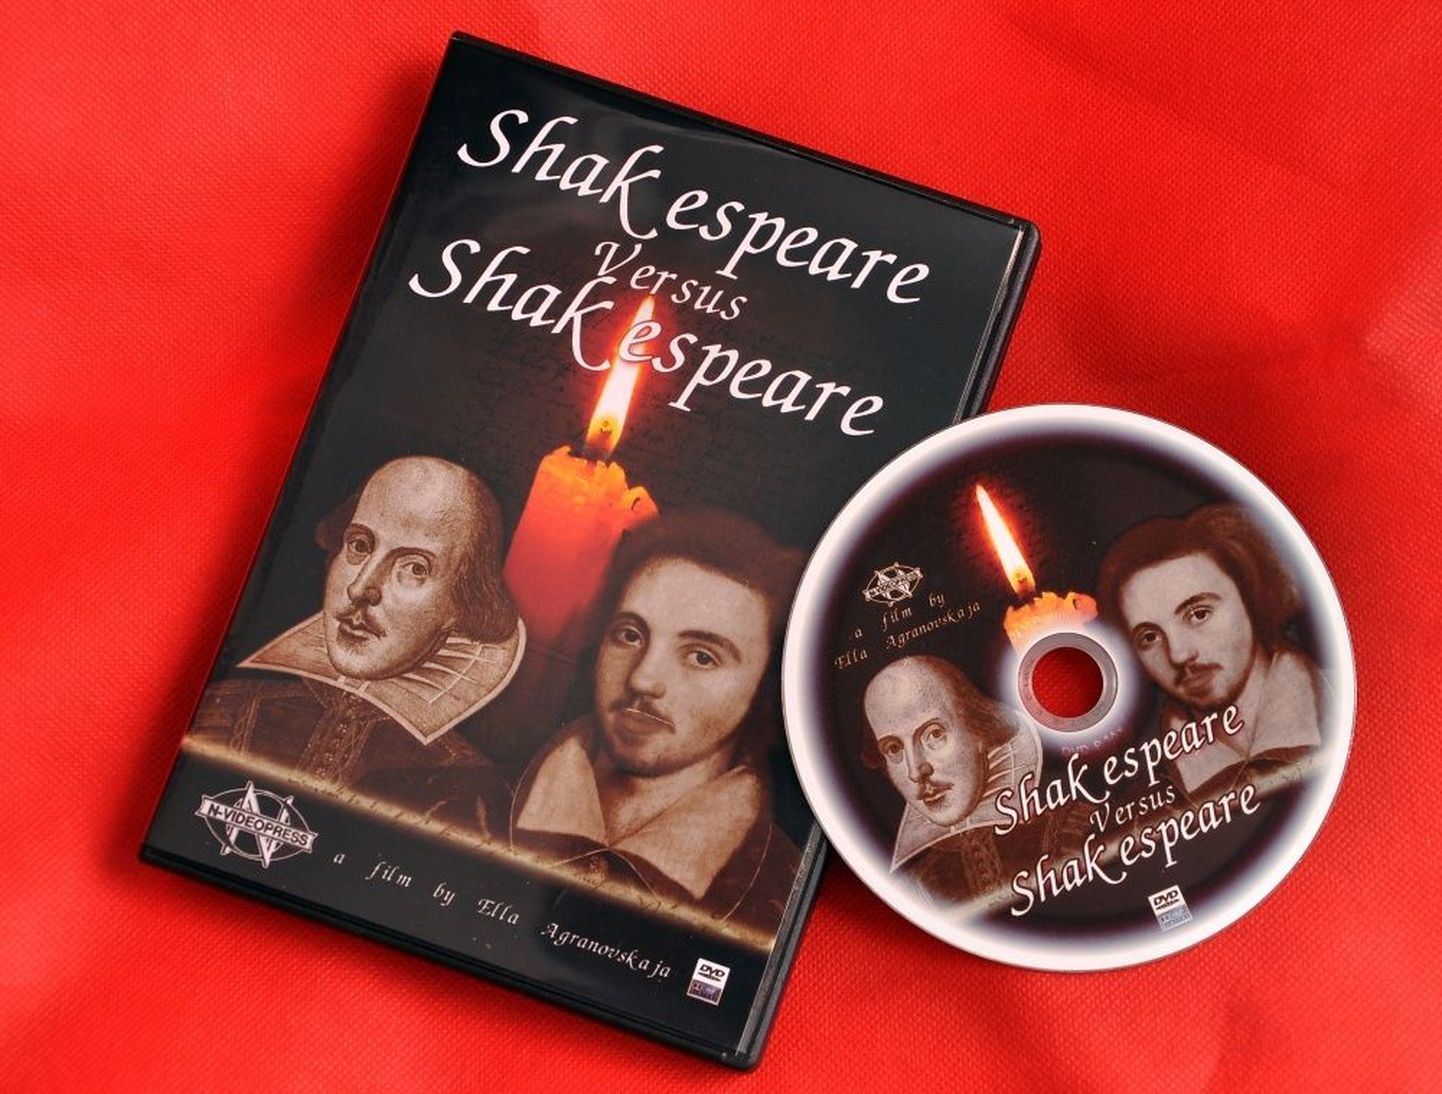 Сюжет документального фильма "Шекспир против Шекспира" строится на сопоставлении биографии Уильяма Шекспира и загадочной истории жизни и смерти его современника, основоположника английской драмы Кристофера Марло.